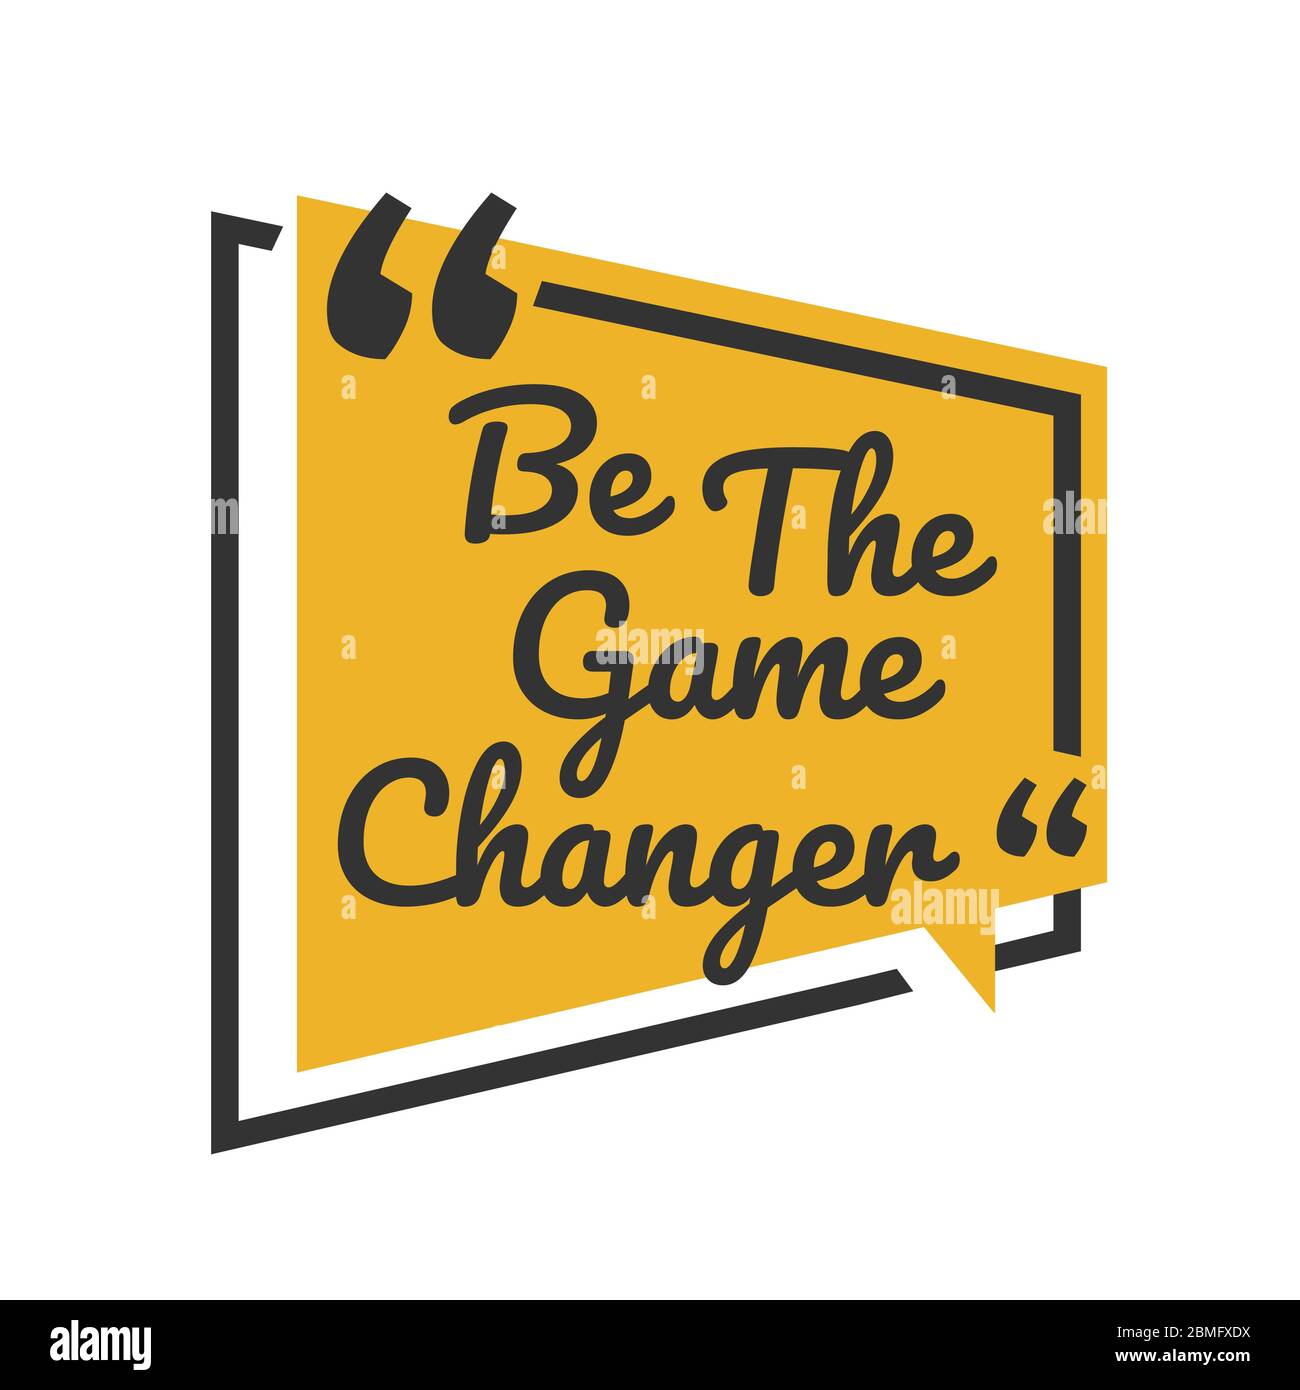 Kreative inspirierende positive Zitate. Seien Sie der Game Changer. Motivation Zitat Vektor Typografie Banner Design Konzept auf blauem quadratischen Form Hintergrund Stock Vektor